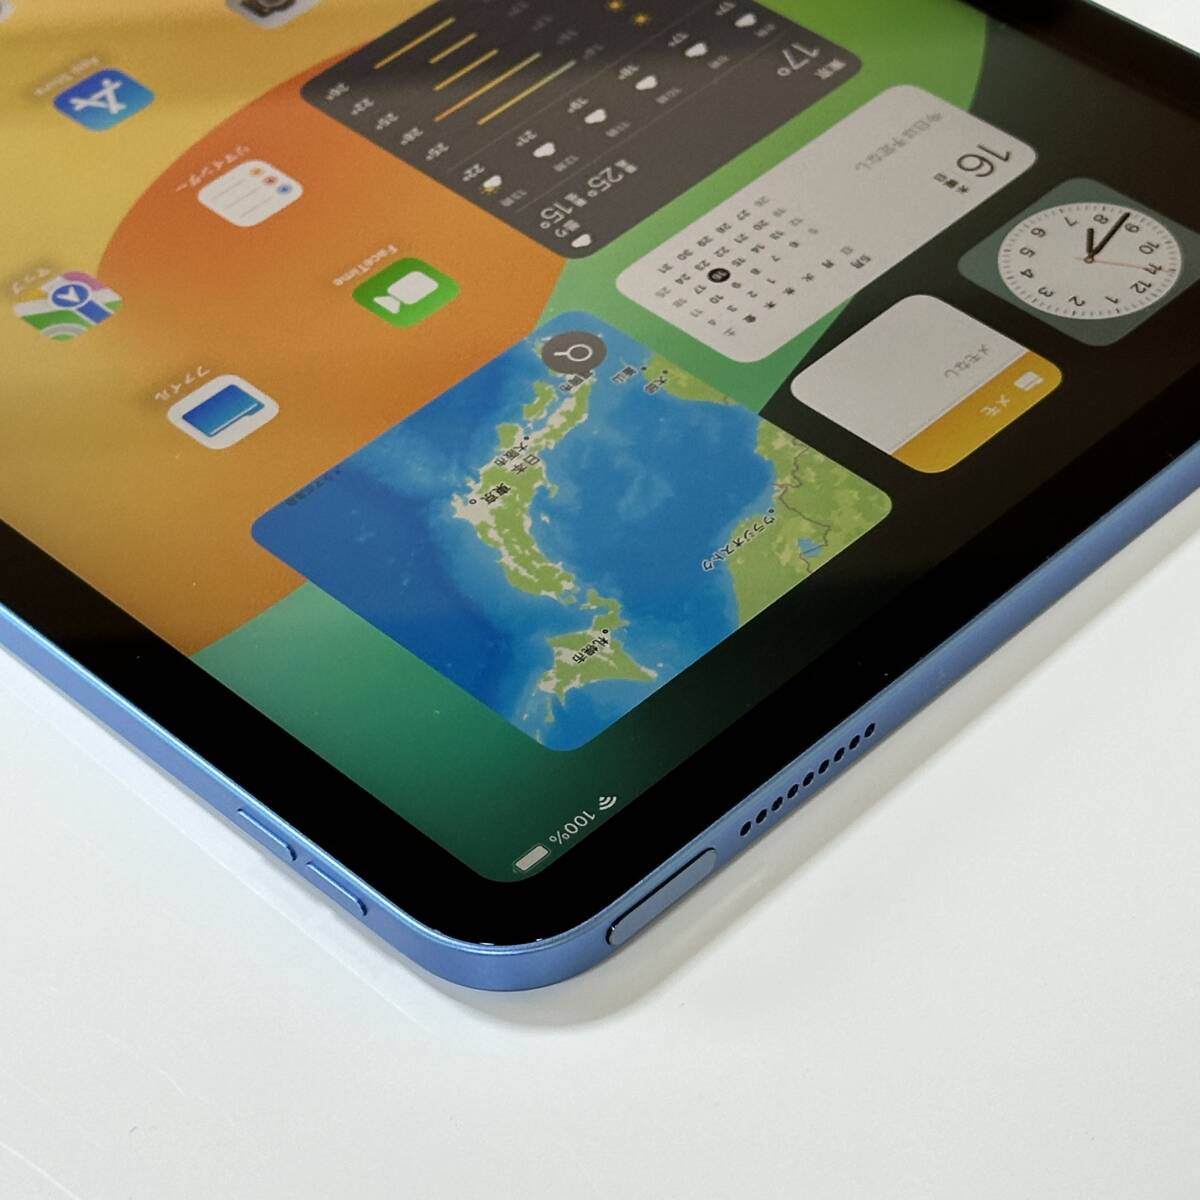 ( превосходный товар ) Apple iPad ( no. 10 поколение ) голубой 64GB MPQ13J/A Wi-Fi модель iOS17.5 Acty беж .n разблокирован 